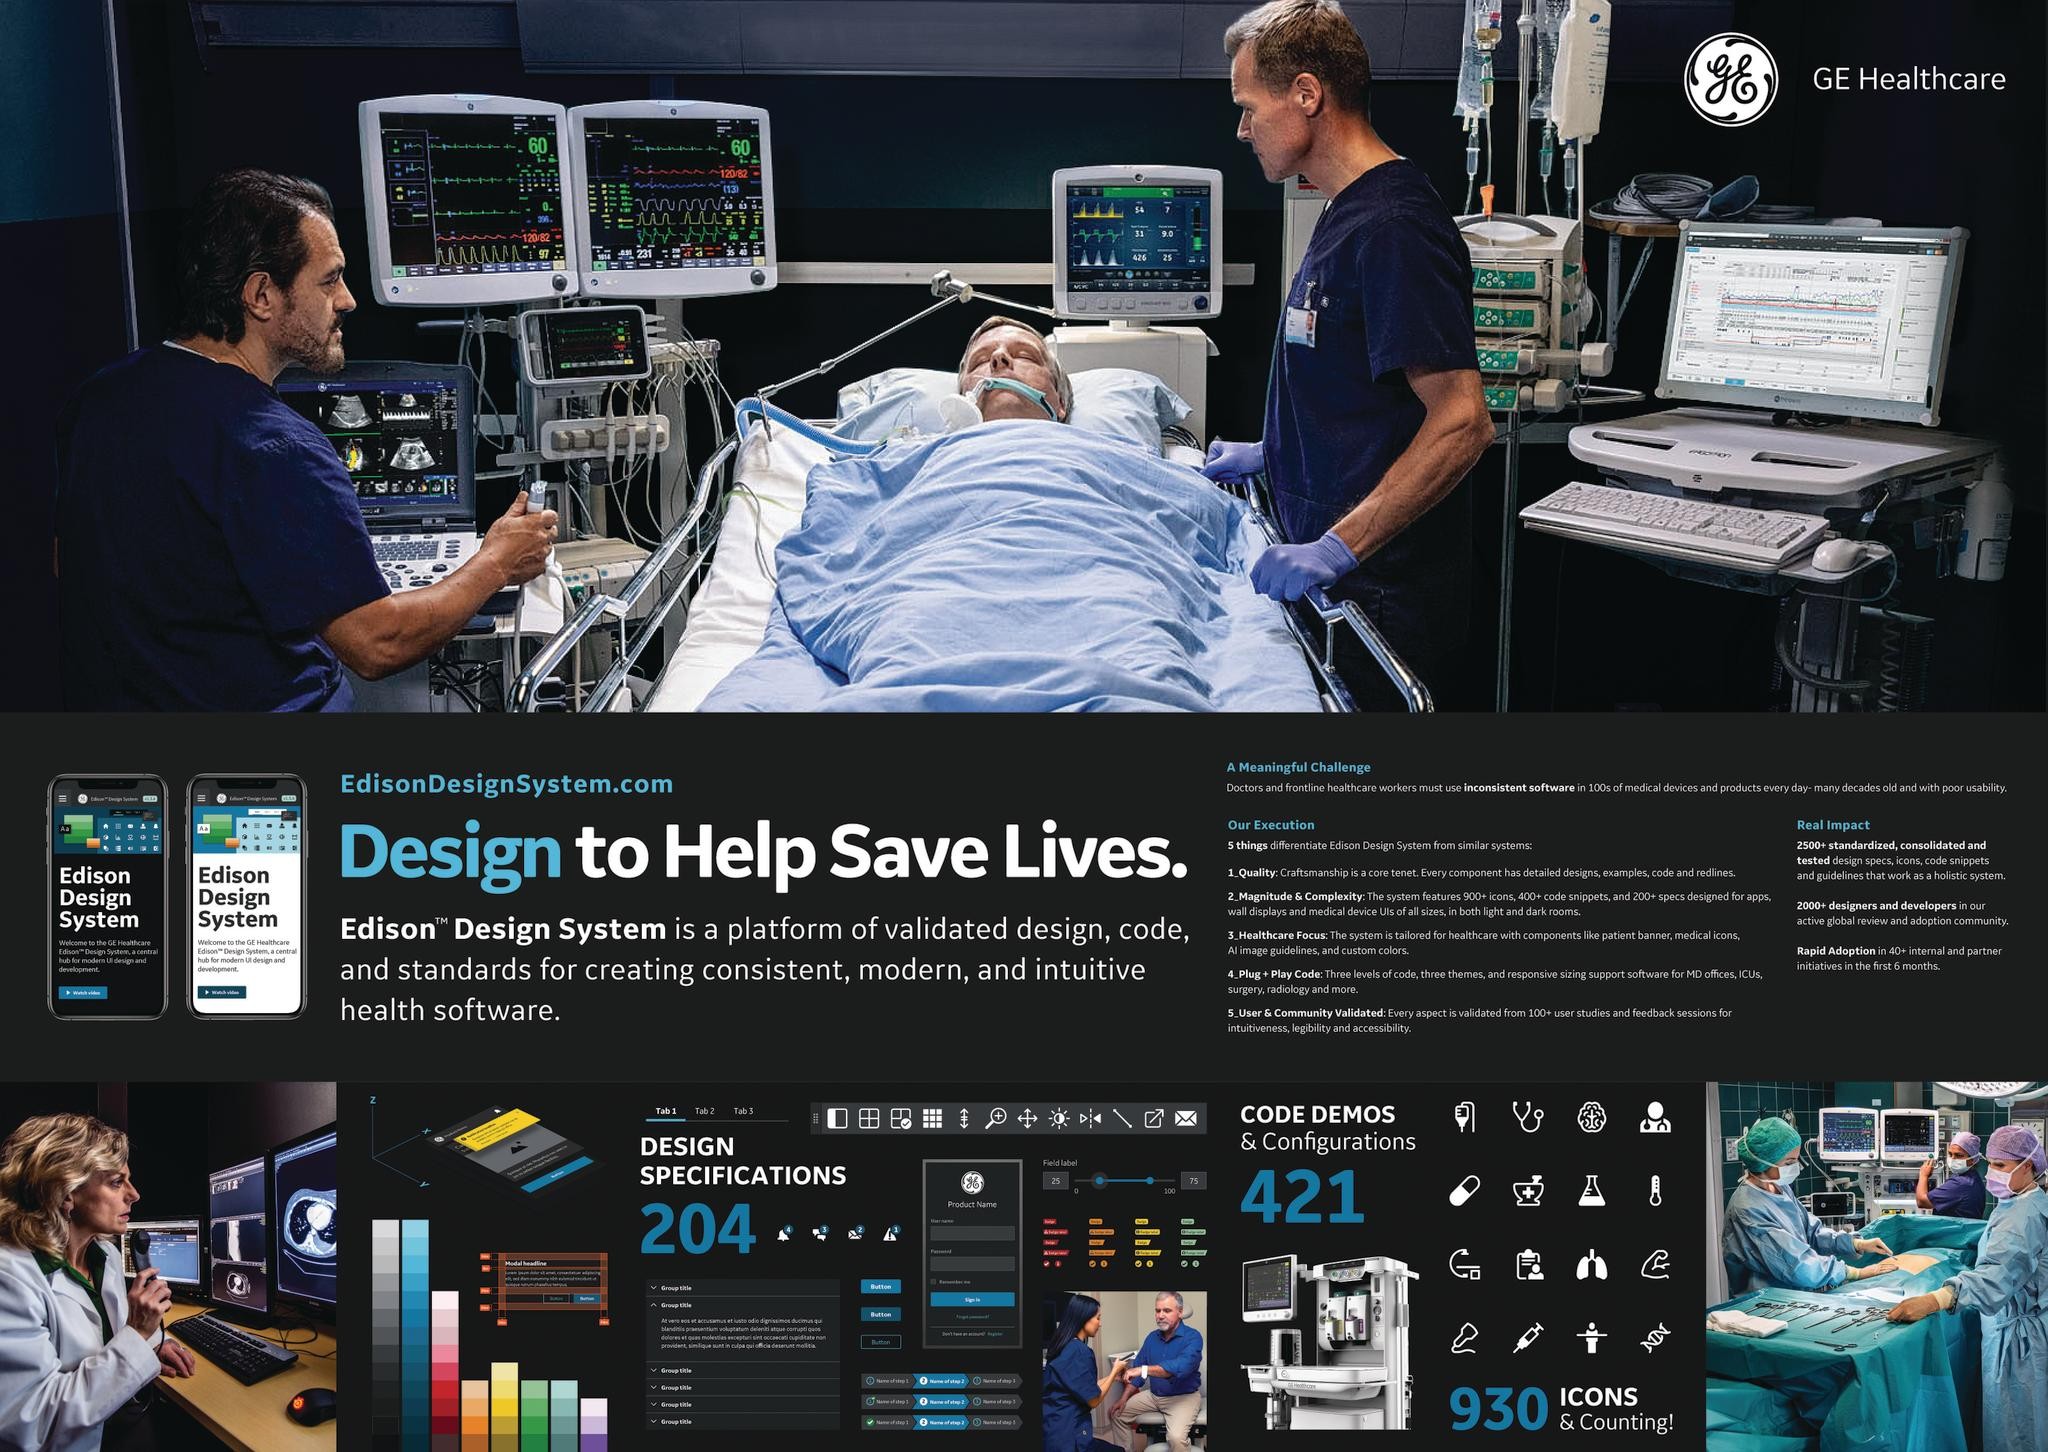 Edison Design System: Design to Help Save Lives